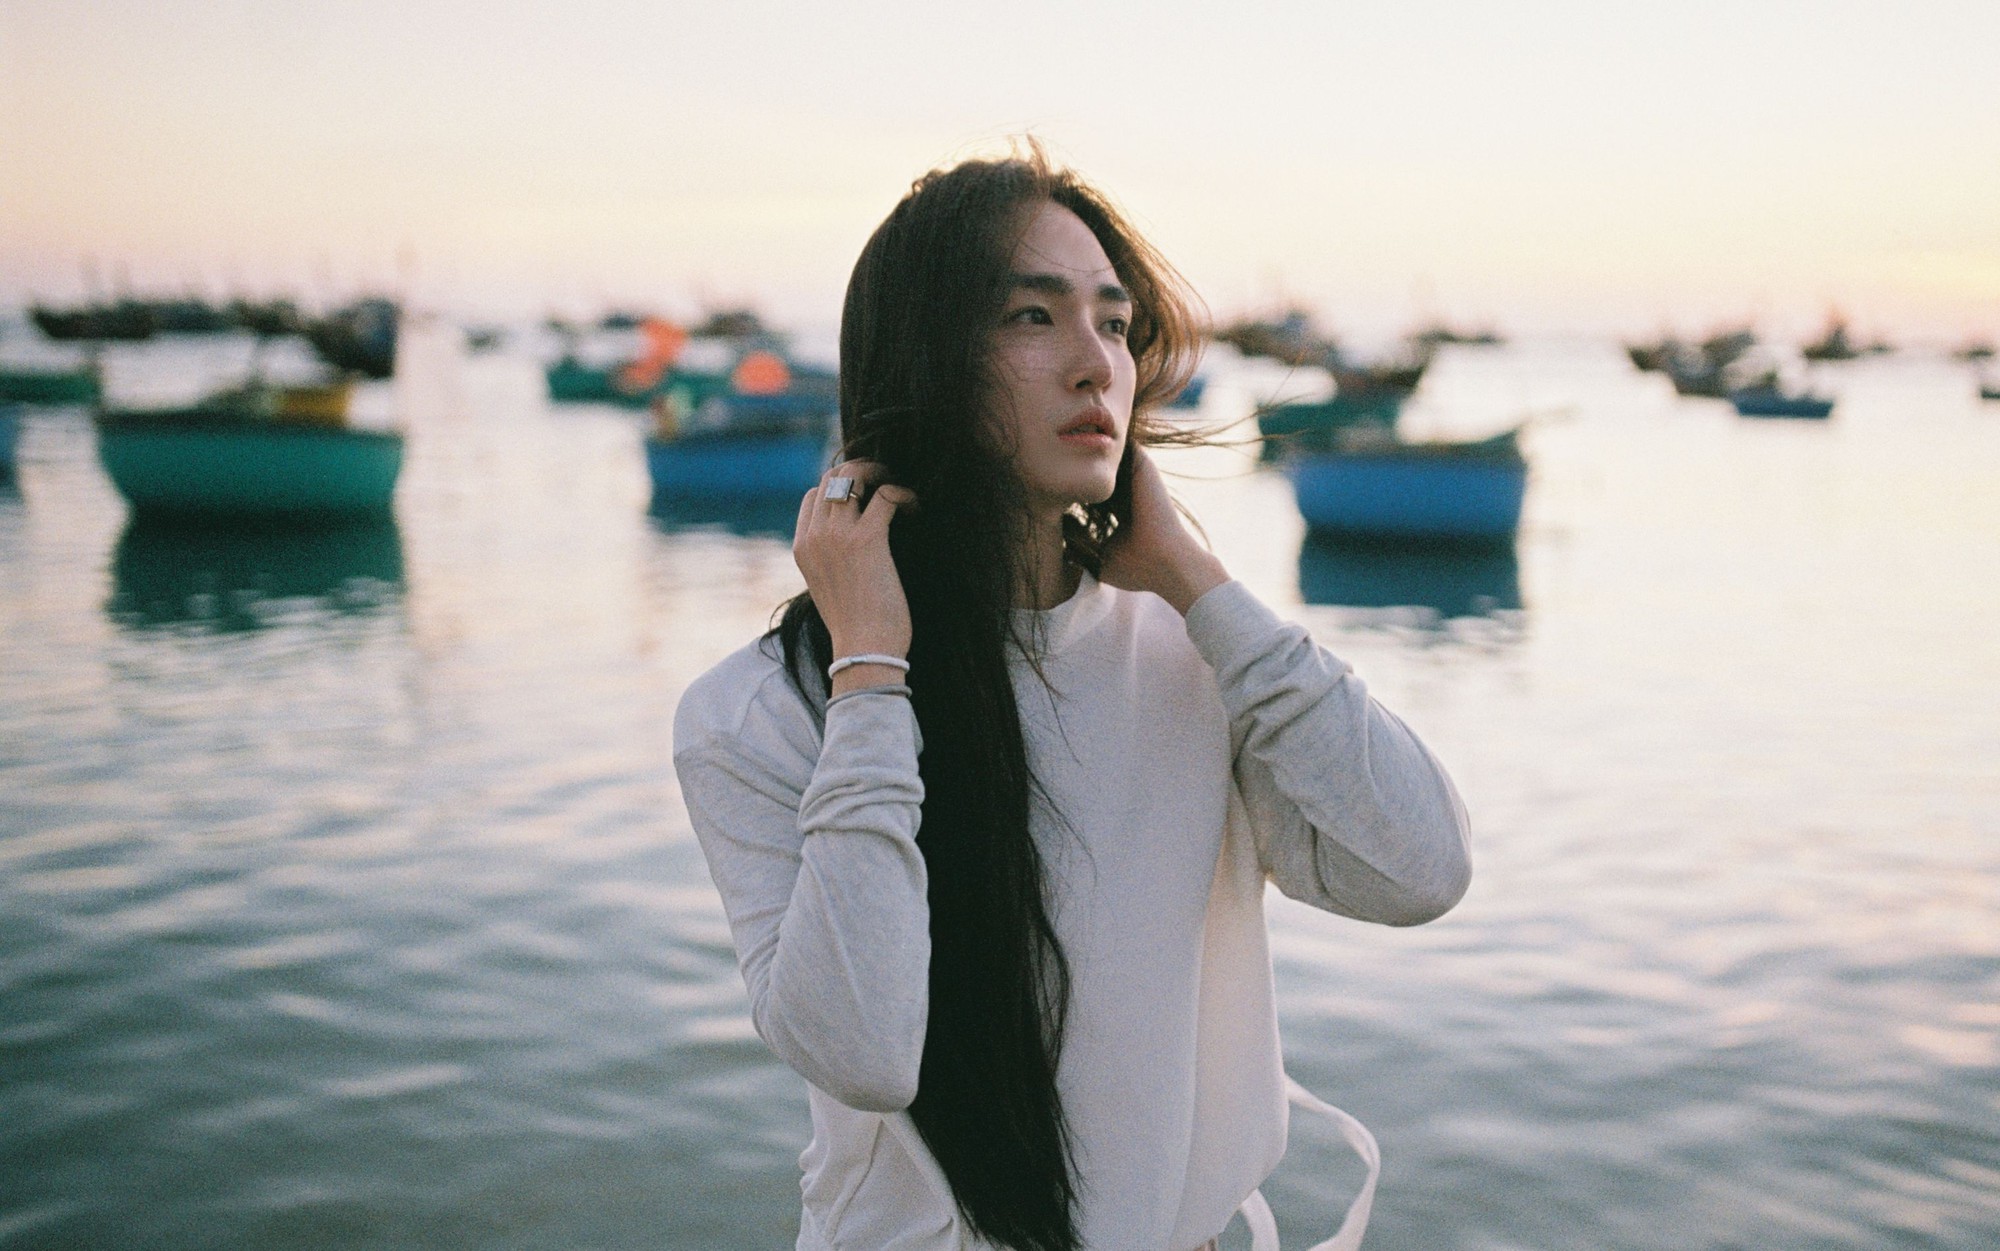 Amaranth Việt Nam  Tóc dài đã xinh sẵn rồi nhưng khí chất của loạt mỹ nữ  này lại nhân đôi khi diện những kiểu tóc ngắn cá tính